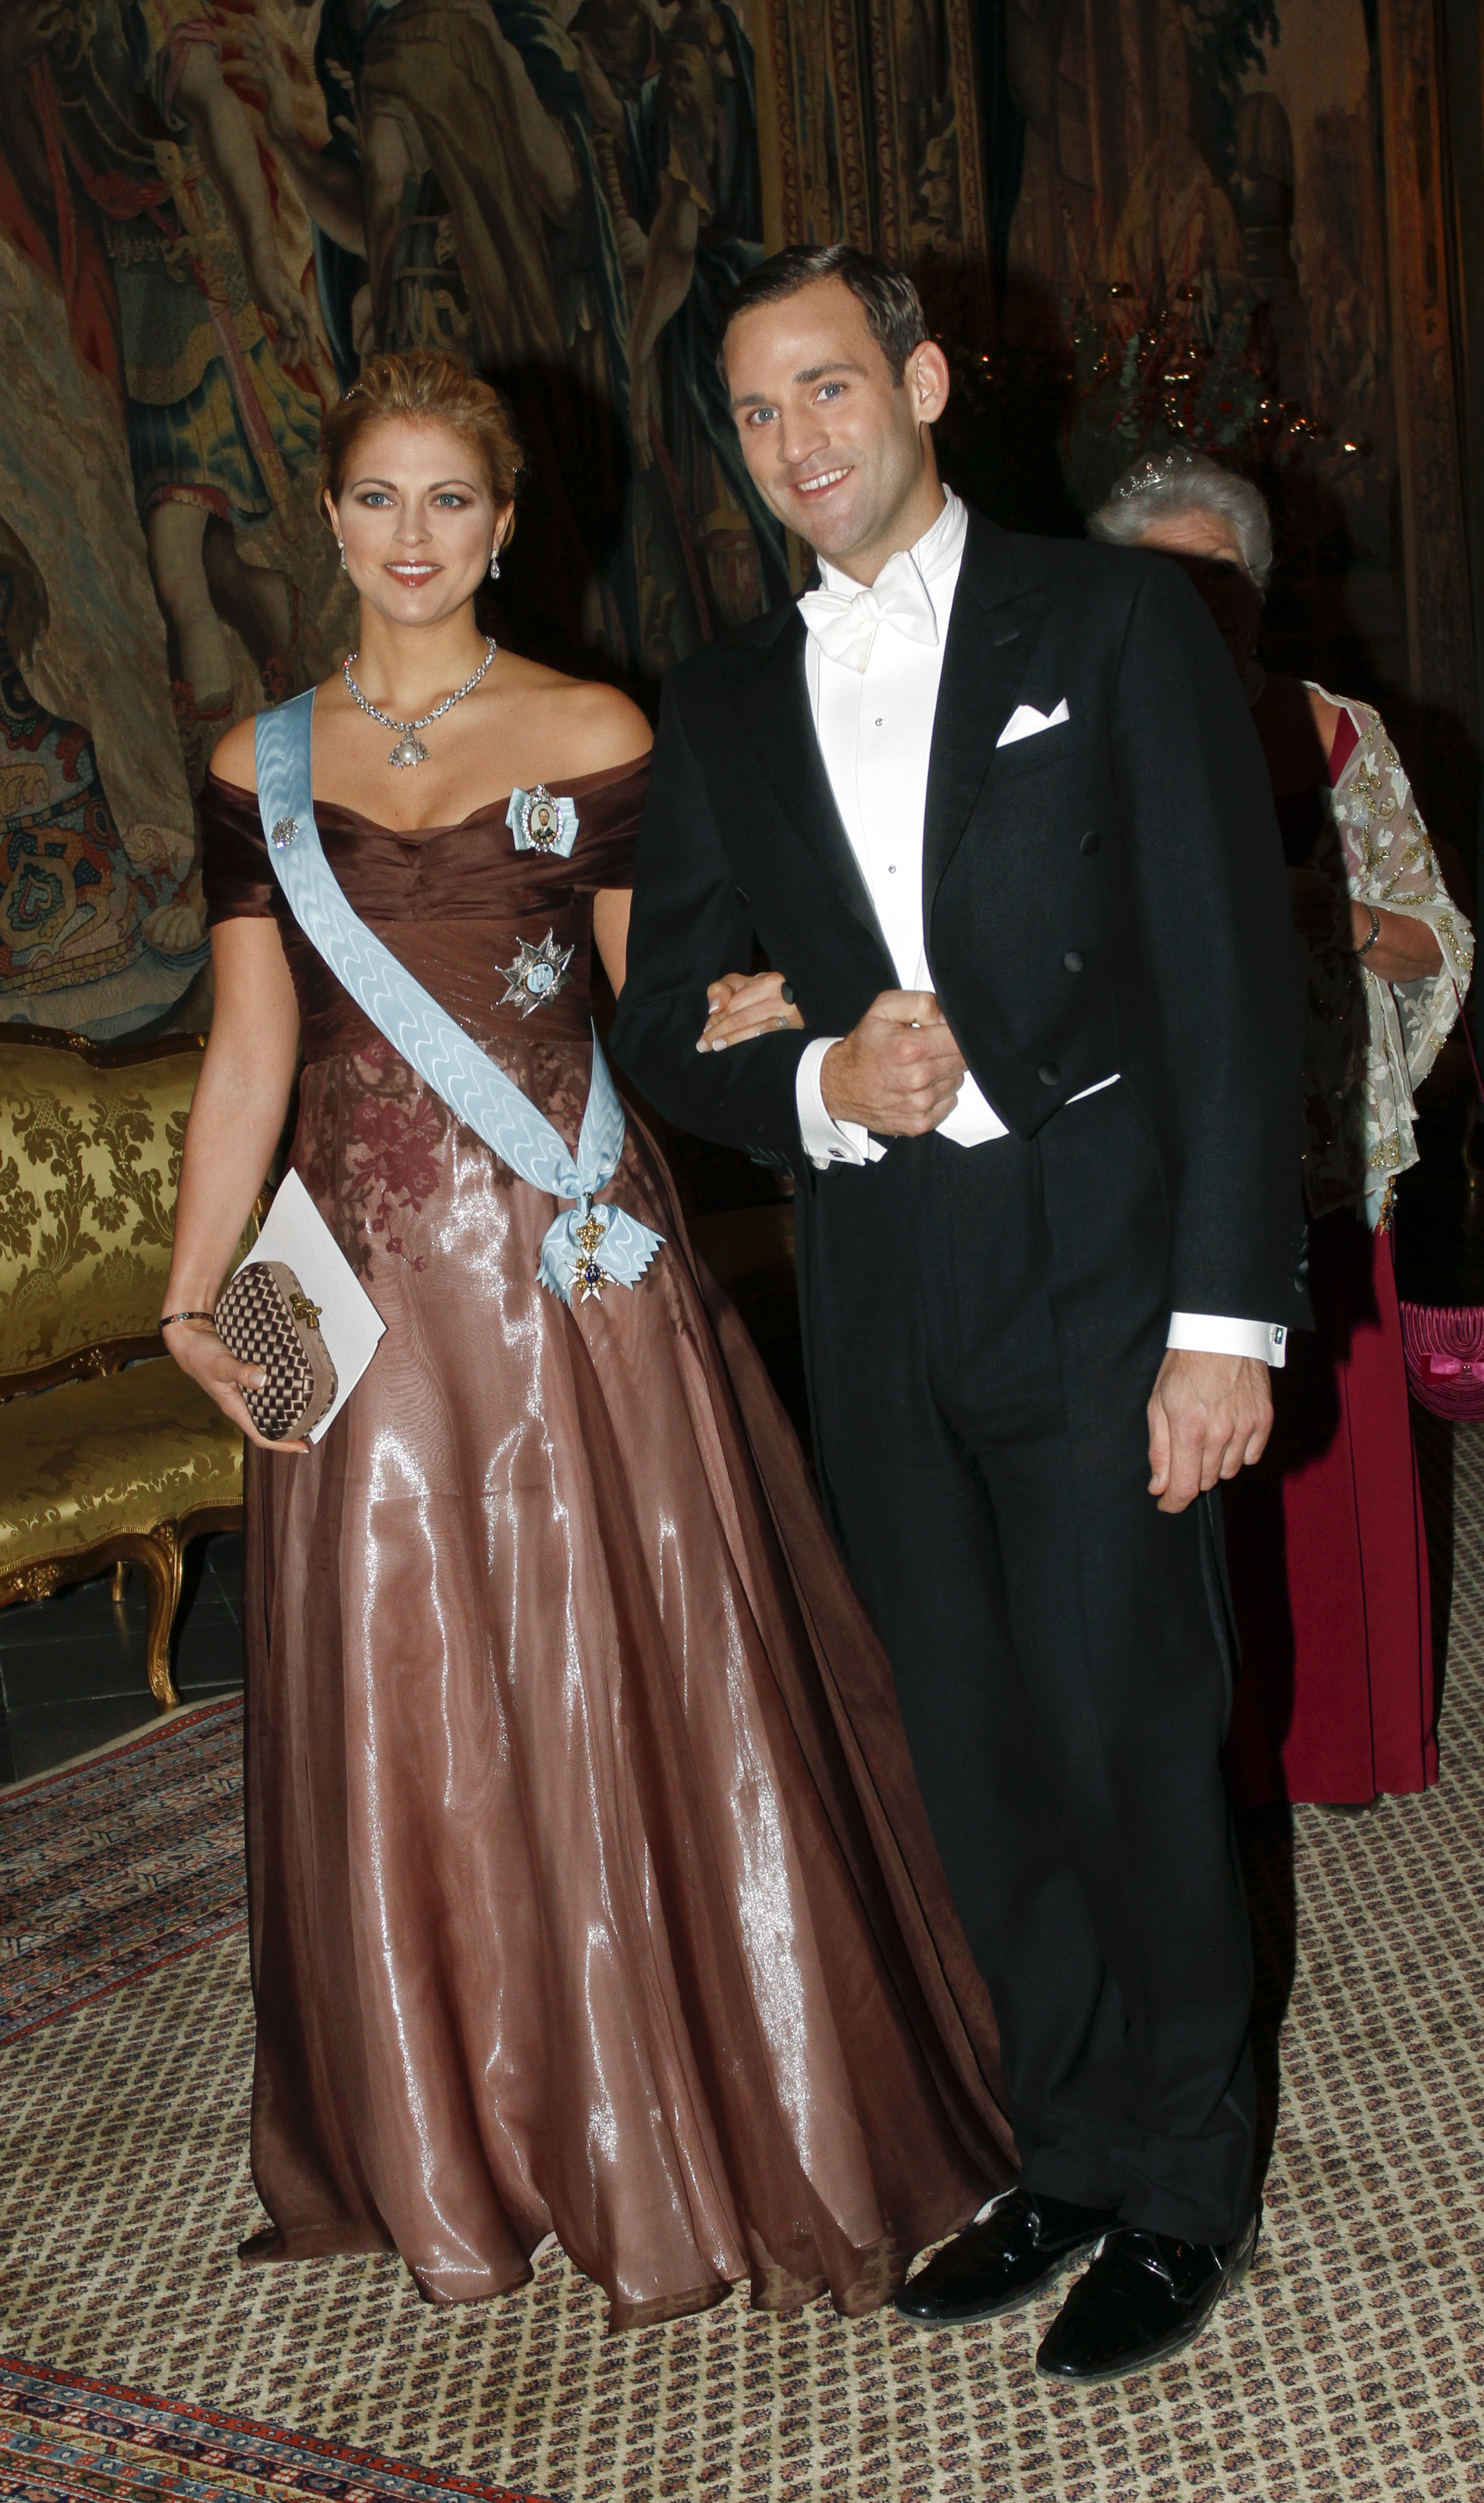 Jonas Bergström är pojkvän till prinsessan Madeleine